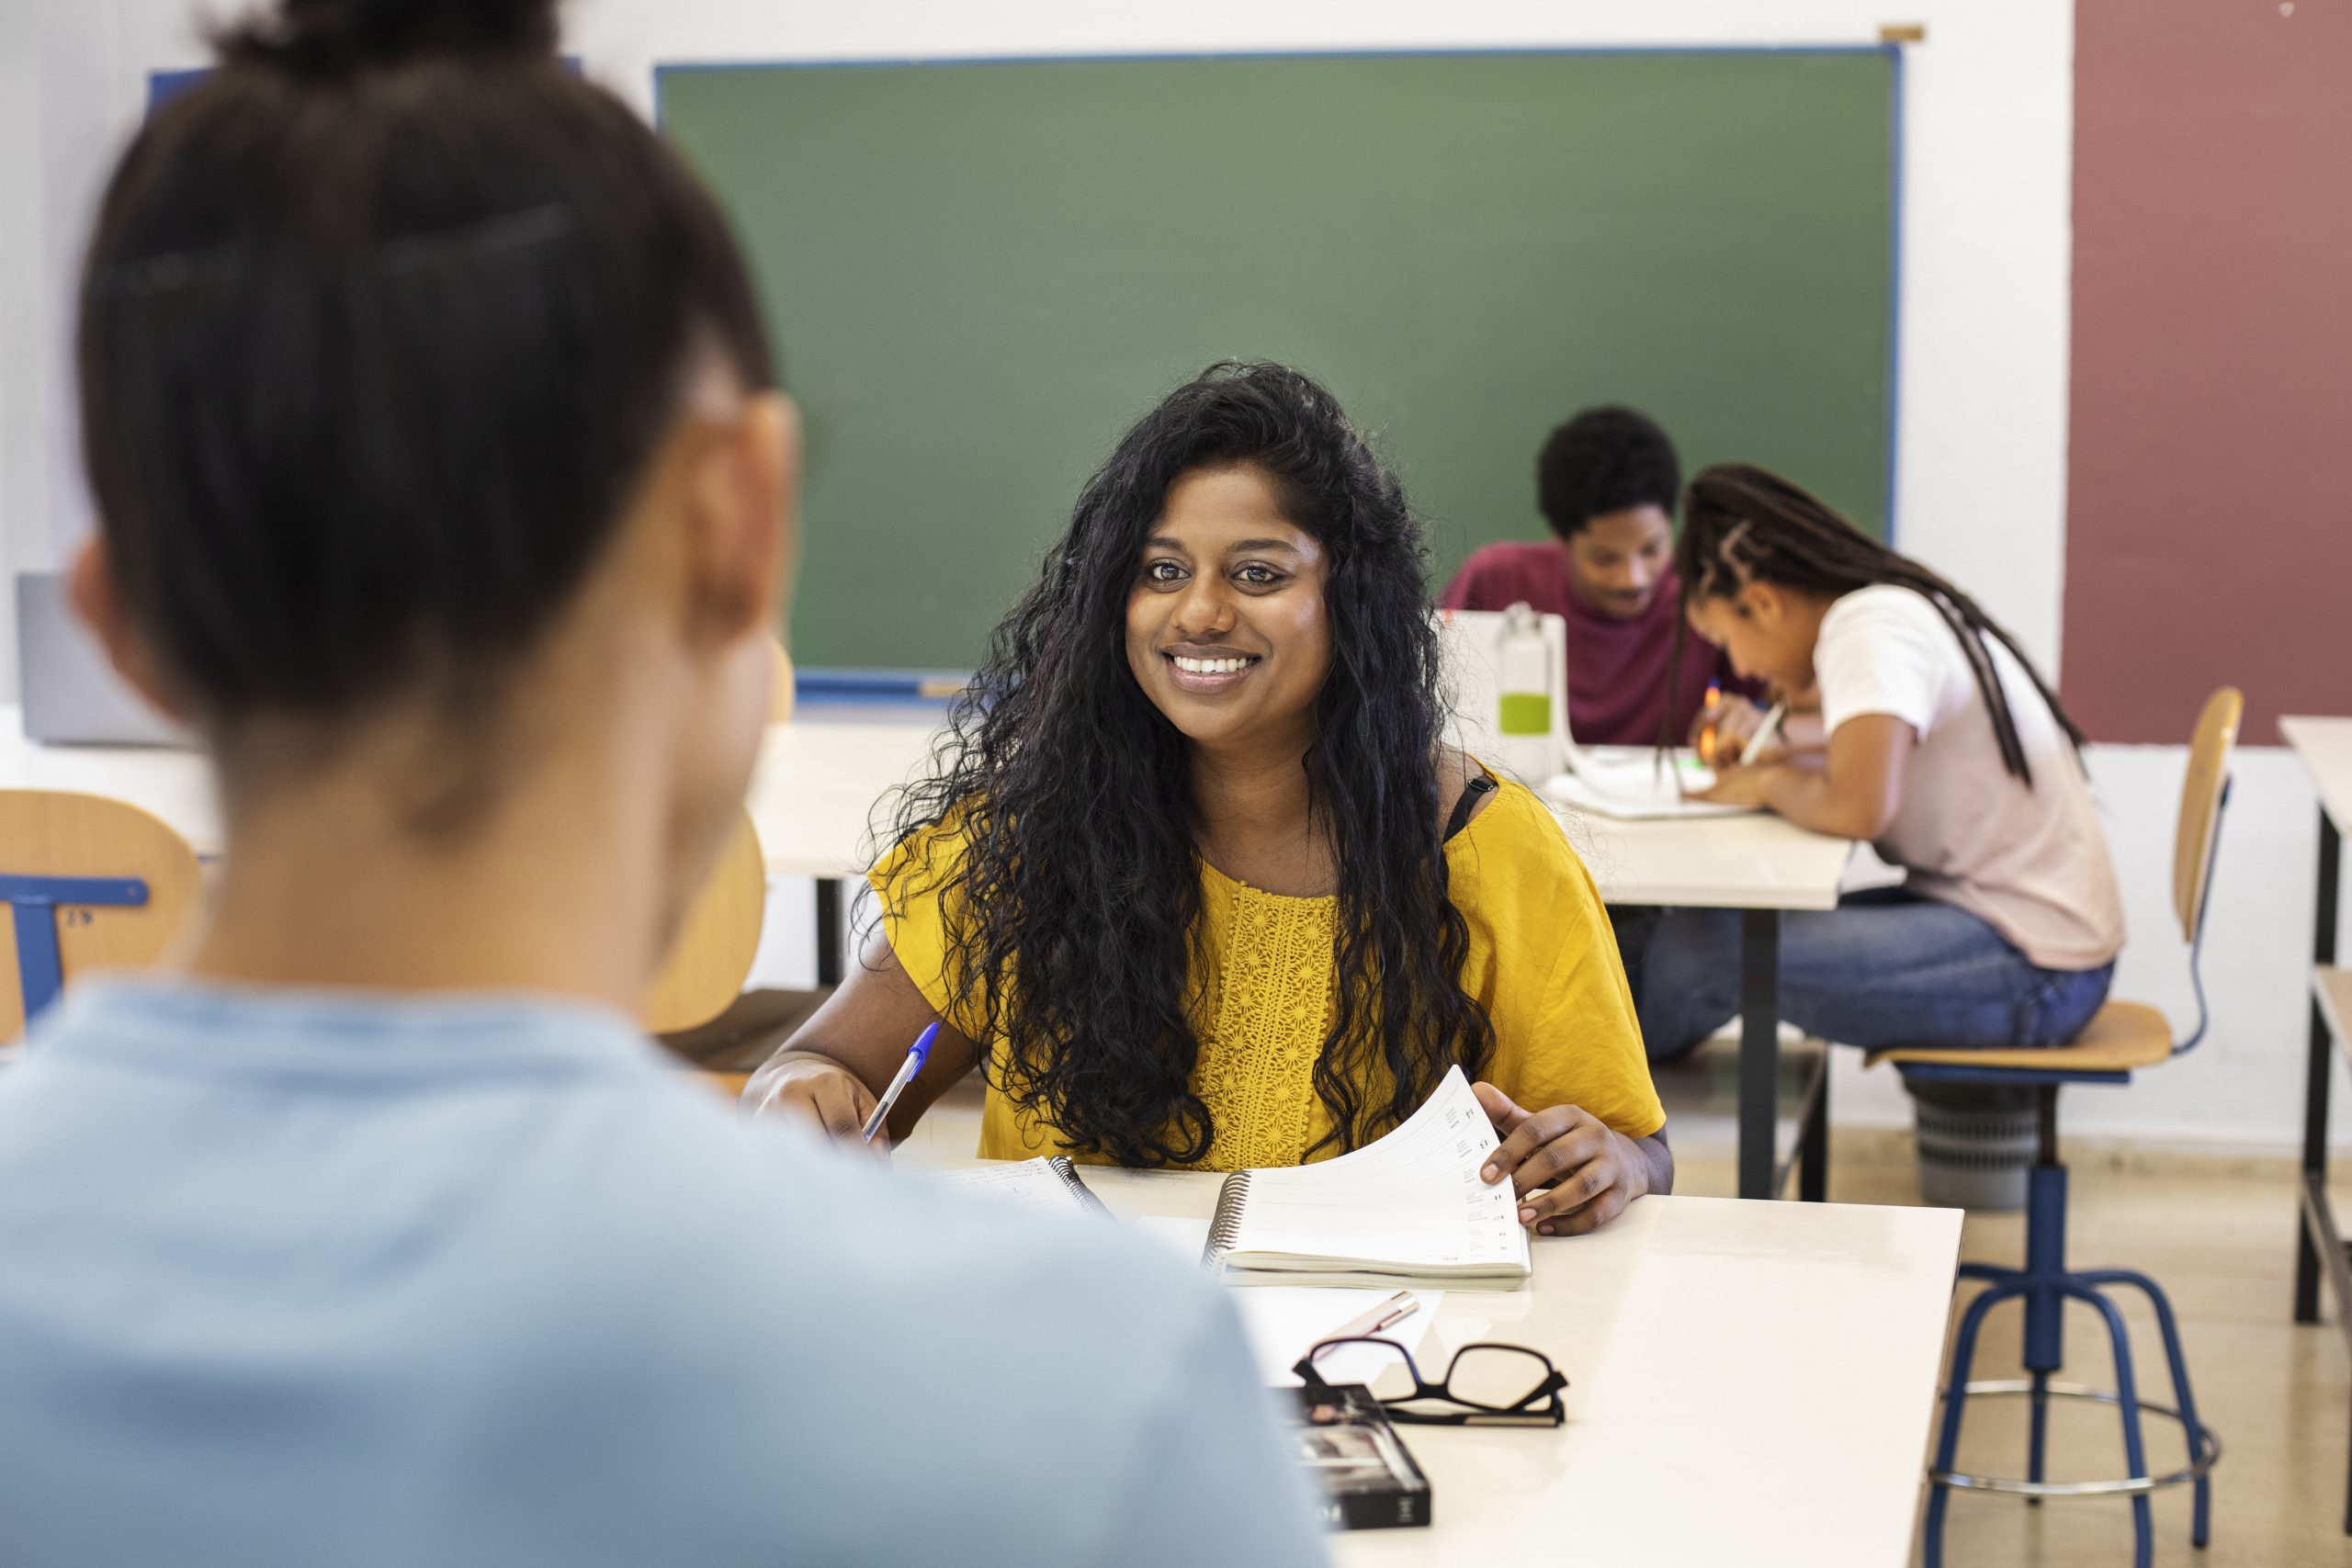 Estudante sorri para professora a sua frente, enquanto colegas ao fundo fazem tarefas na sala de aula